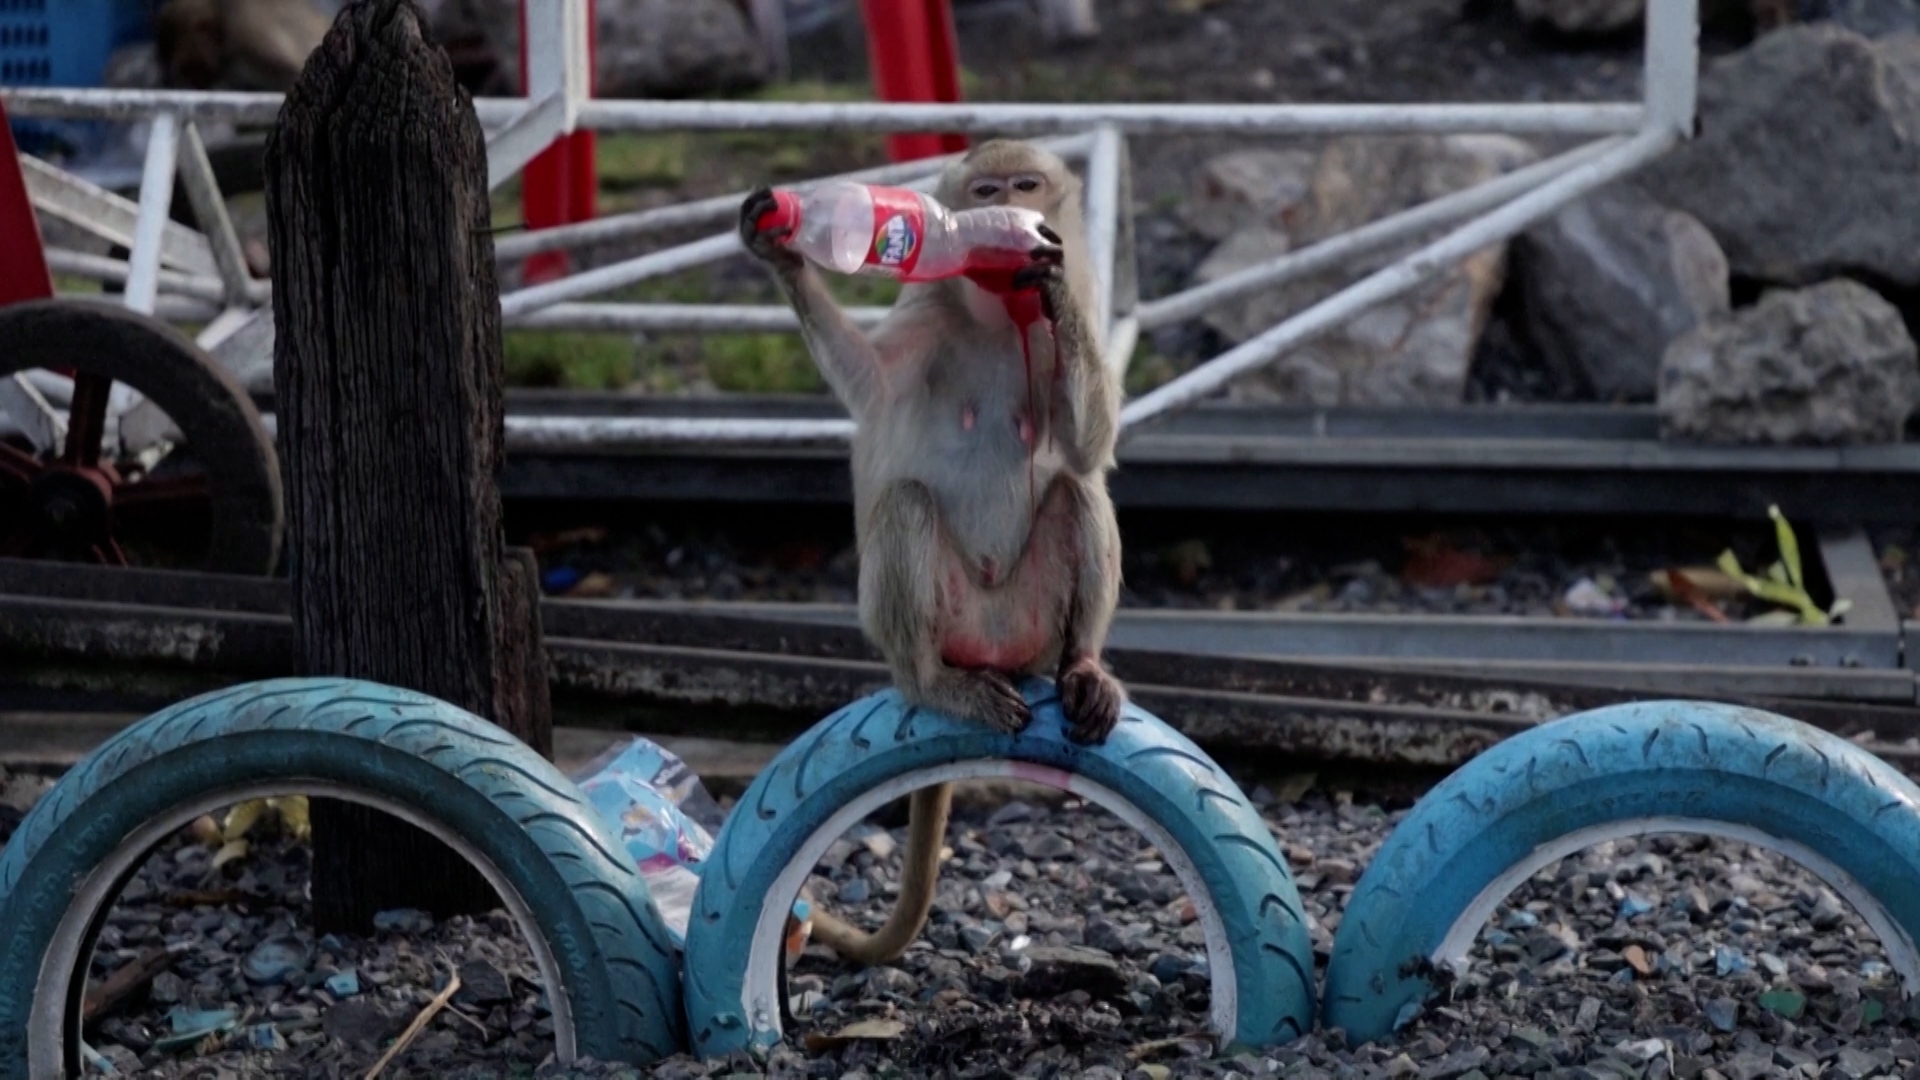 Βίντεο: Μαϊμούδες απόλαυσαν το ετήσιο τσιμπούσι ευγνωμοσύνης στην Ταϊλάνδη